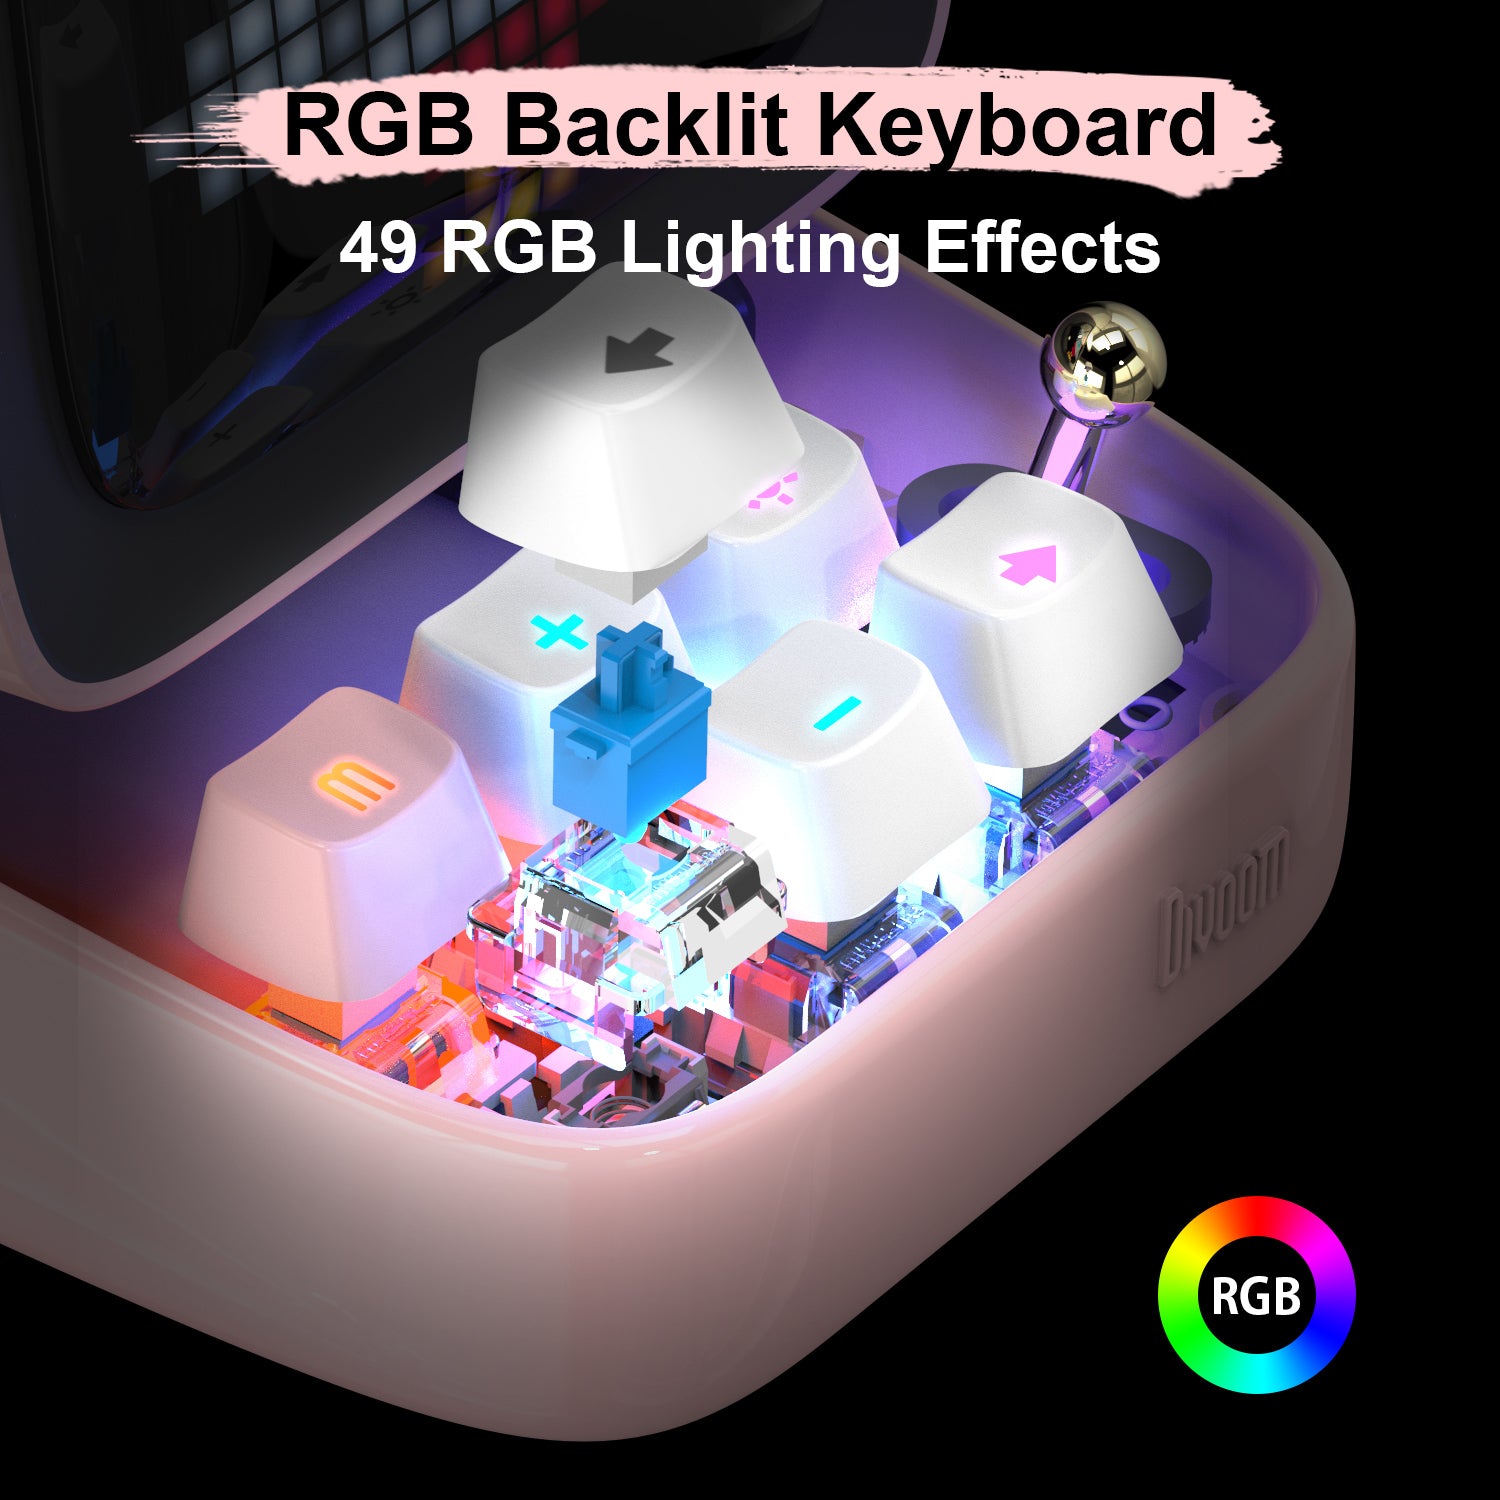 Alto-falante Bluetooth Divoom Ditoo Retro Pixel Art Game com 16X16 LED Tela Frontal Controlada por Aplicativo